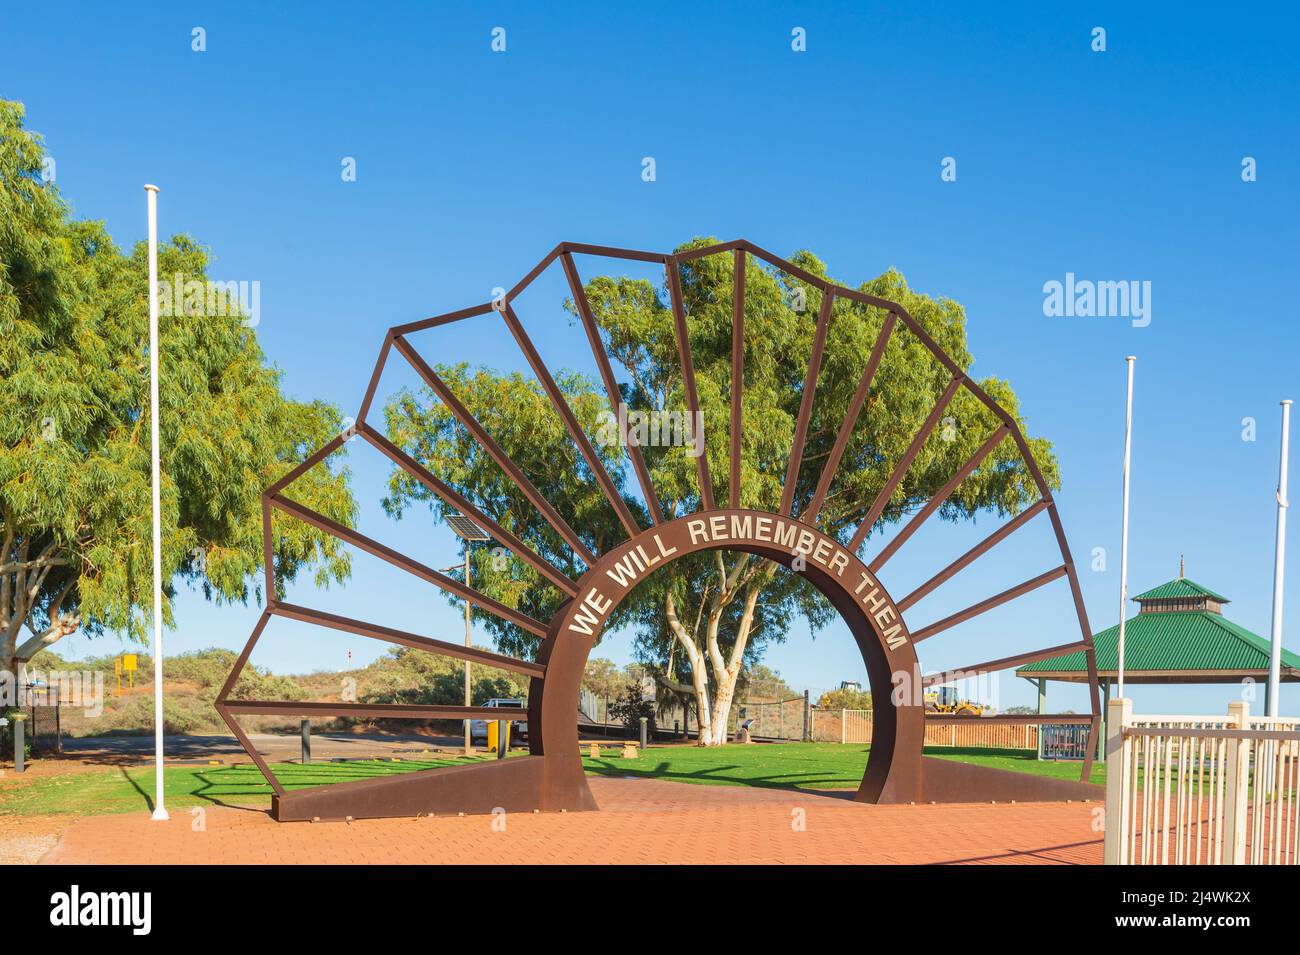 Wir werden uns an sie erinnern Denkmal für gefallene Soldaten, Onslow, Pilbara, Western Australia, WA, Australien Stockfoto